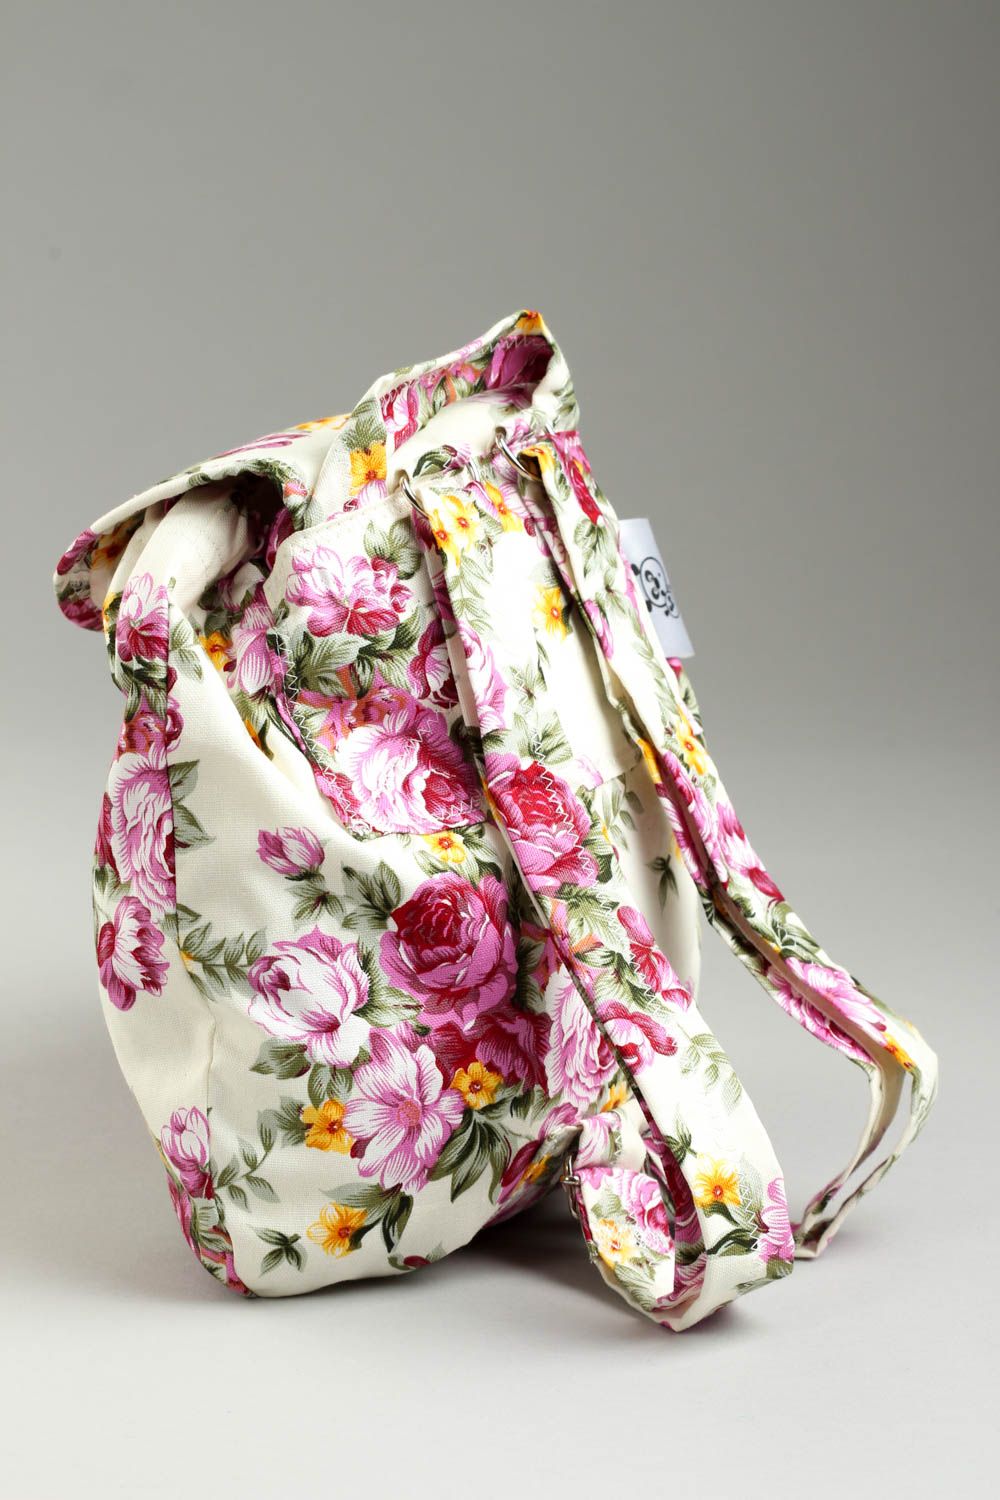 Текстильный рюкзак